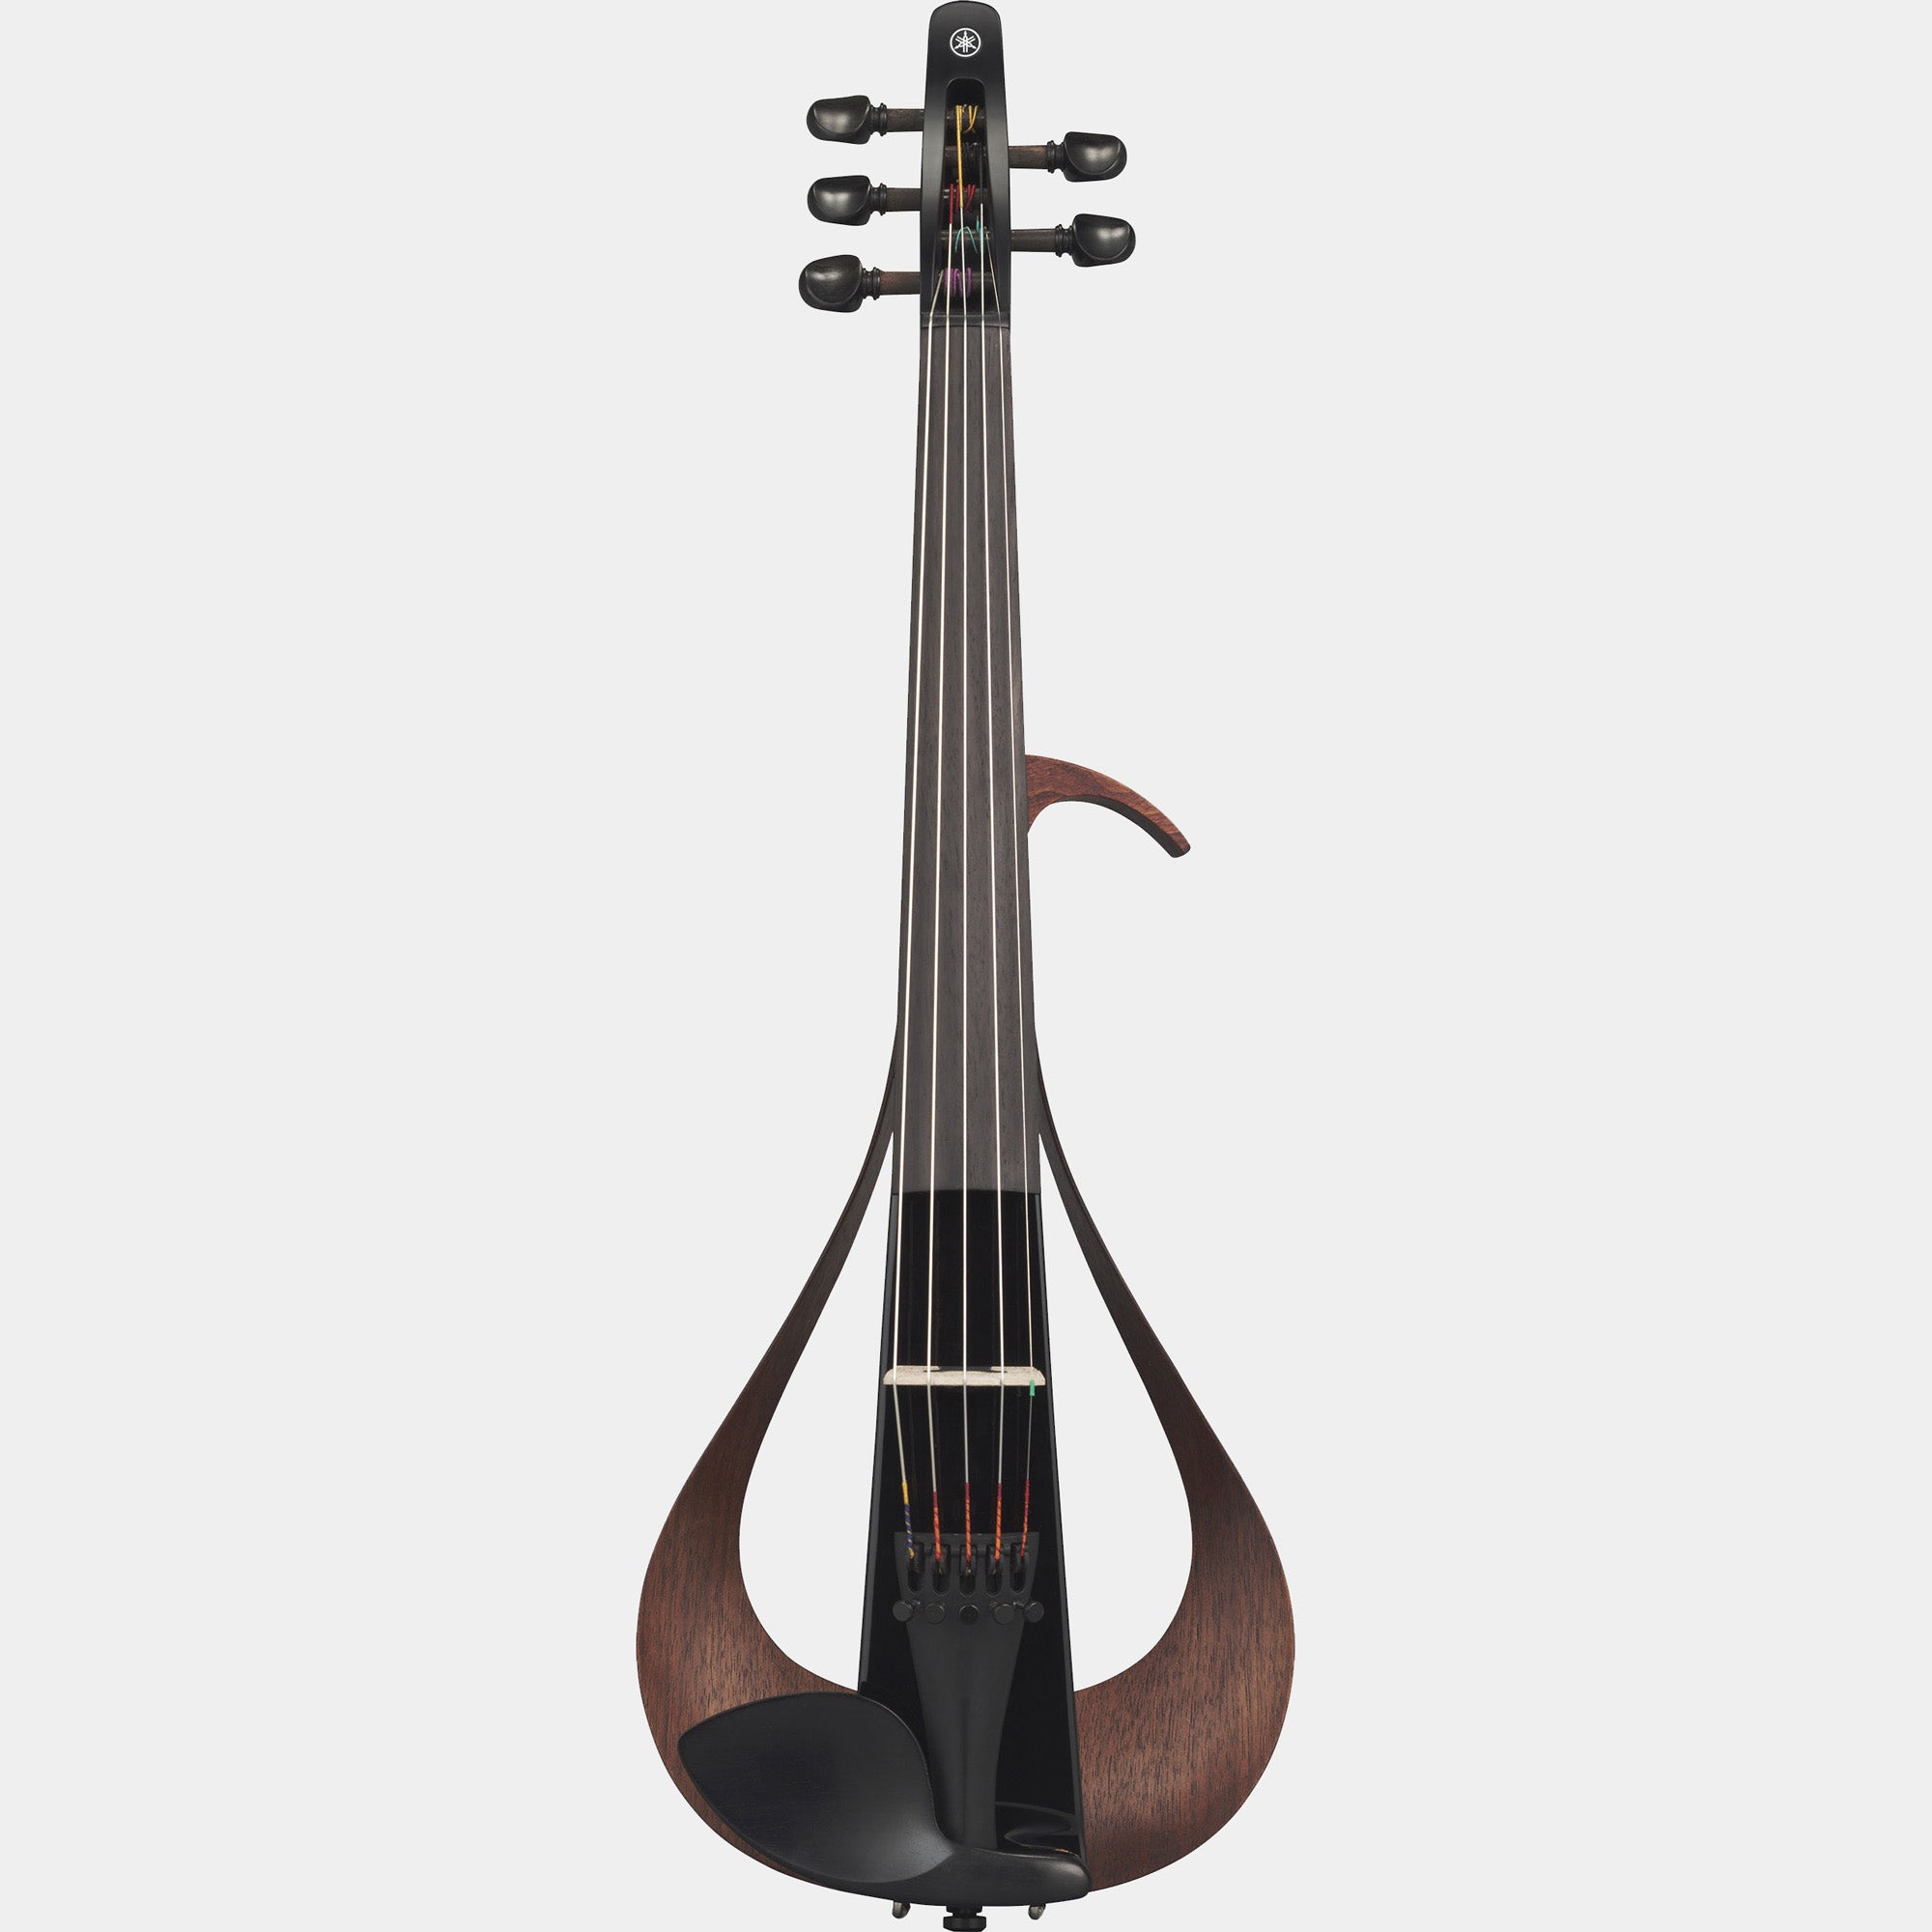 YEV105 5-String Electric Violin